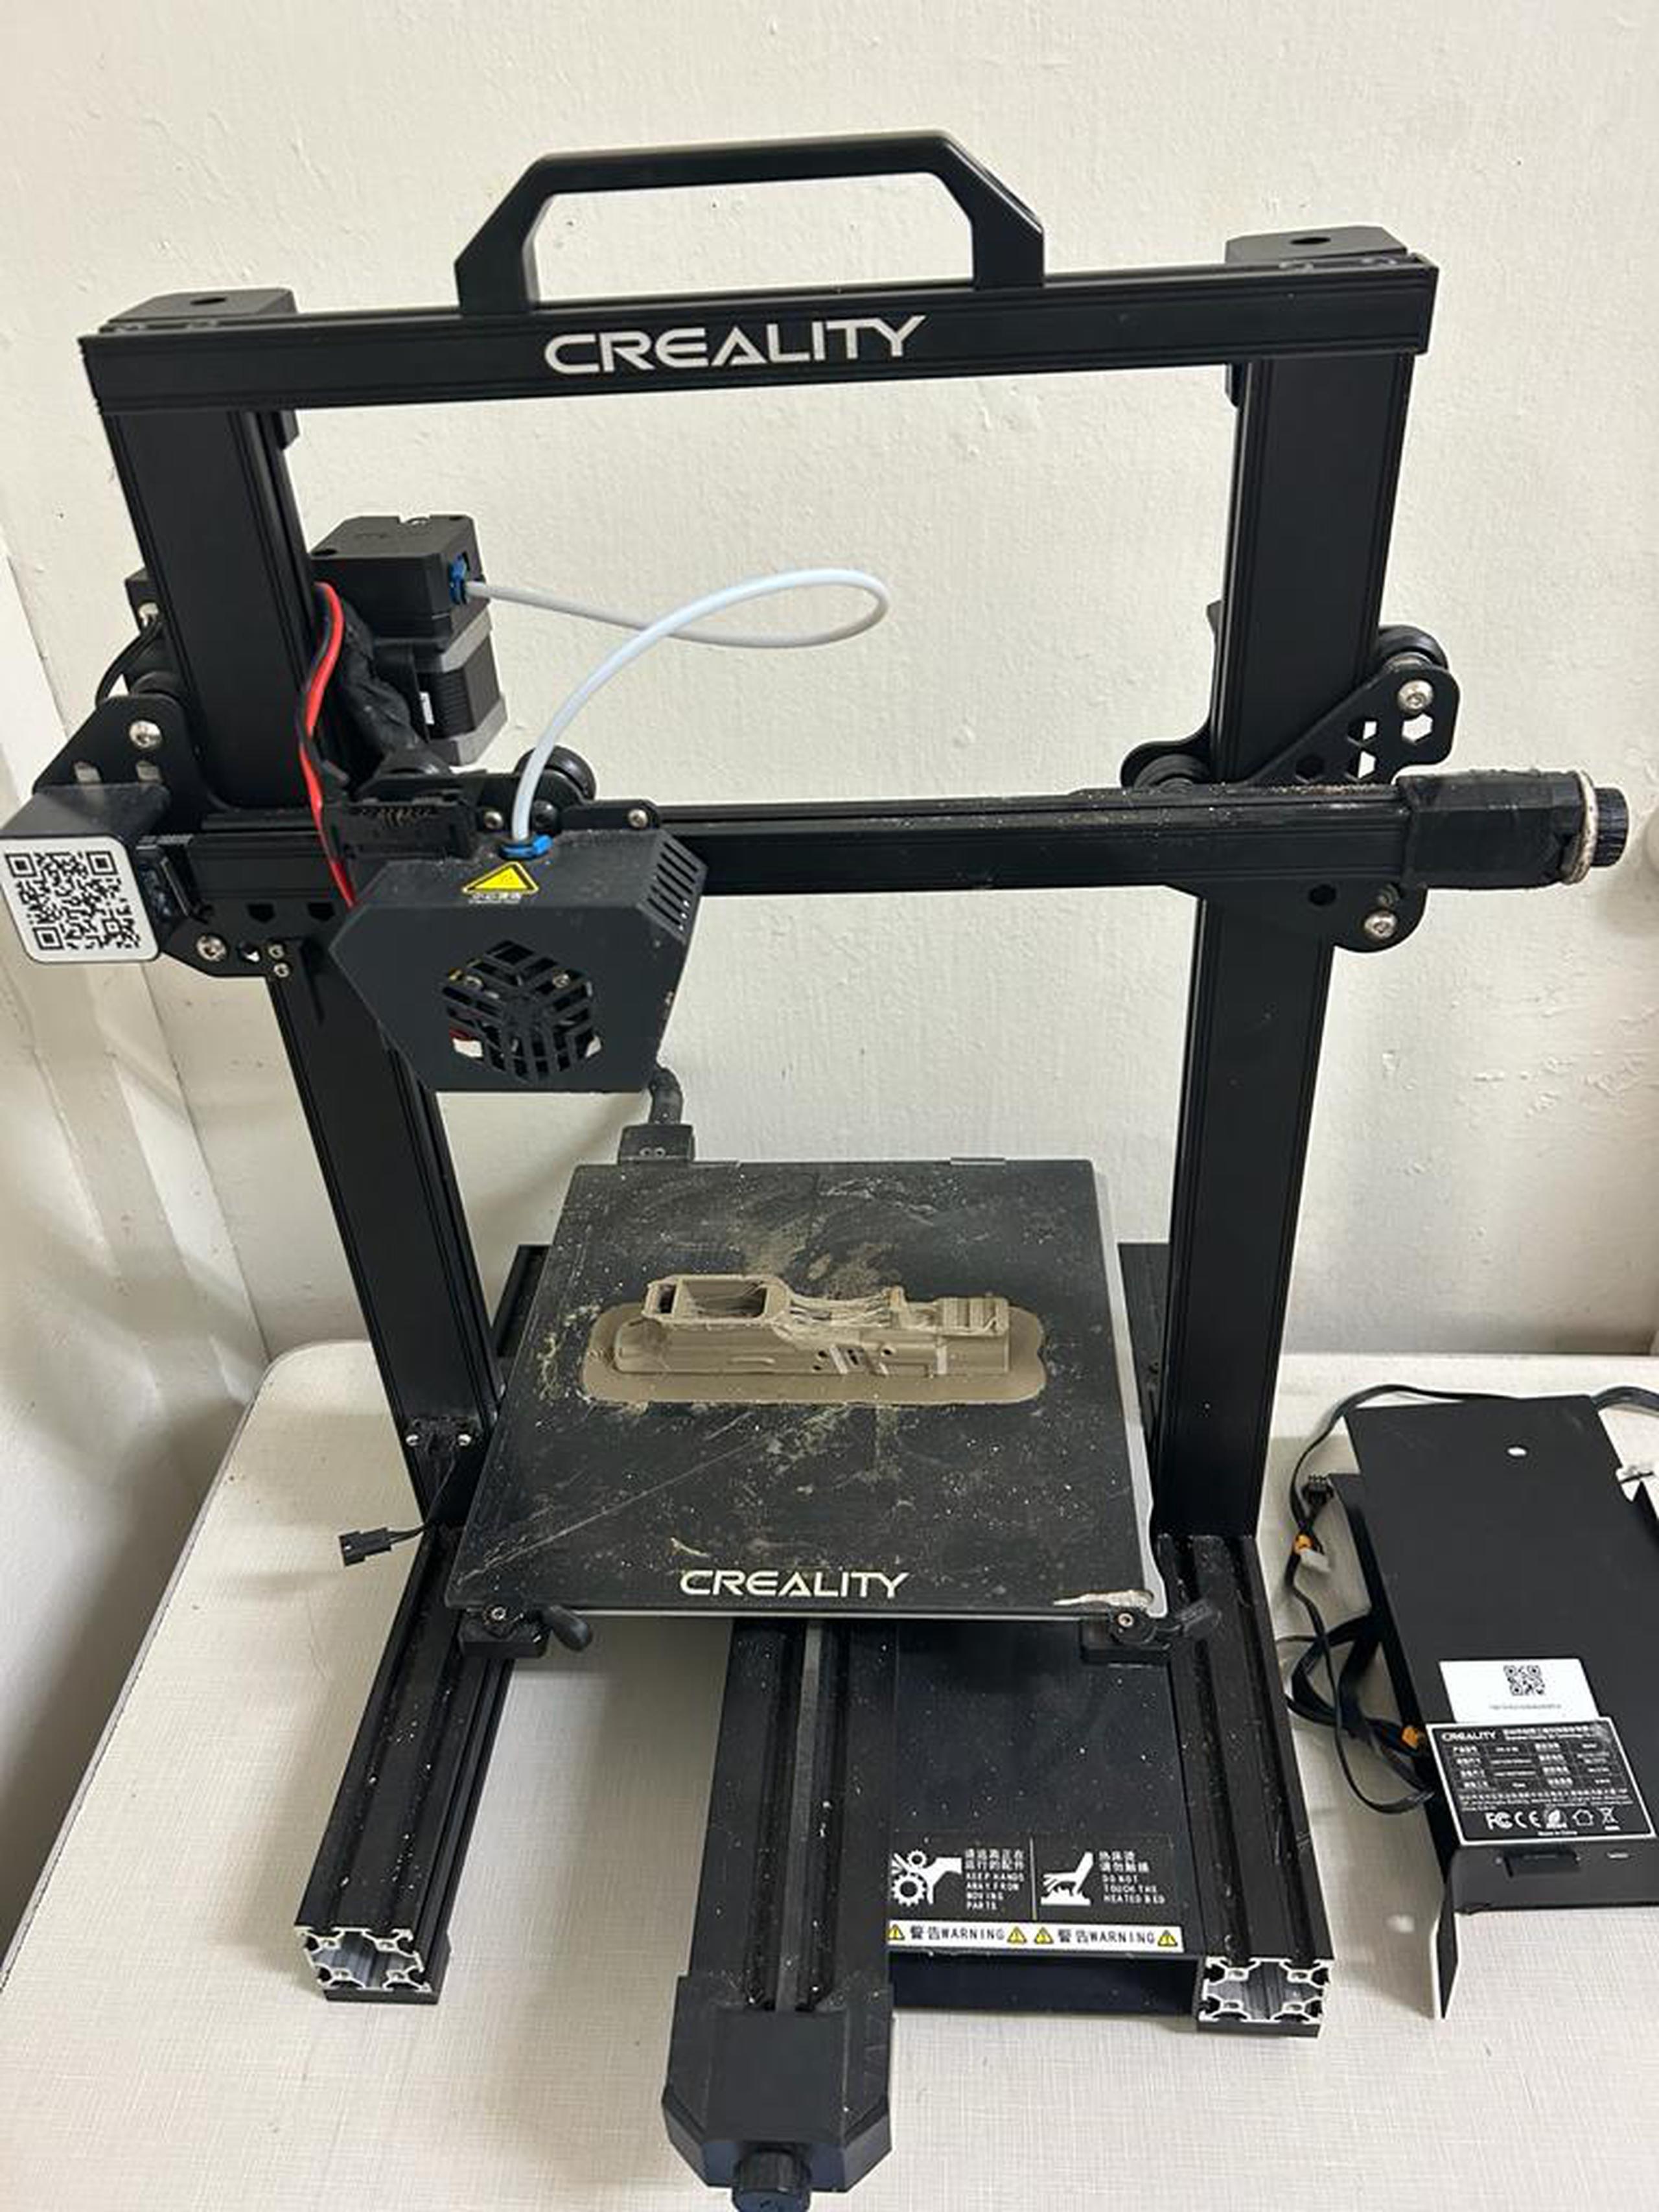 Una máquina impresora 3D printing para crear pistolas en plástico fue ocupada durante un allanamiento en una residencia del barrio Rancheras de Yauco,